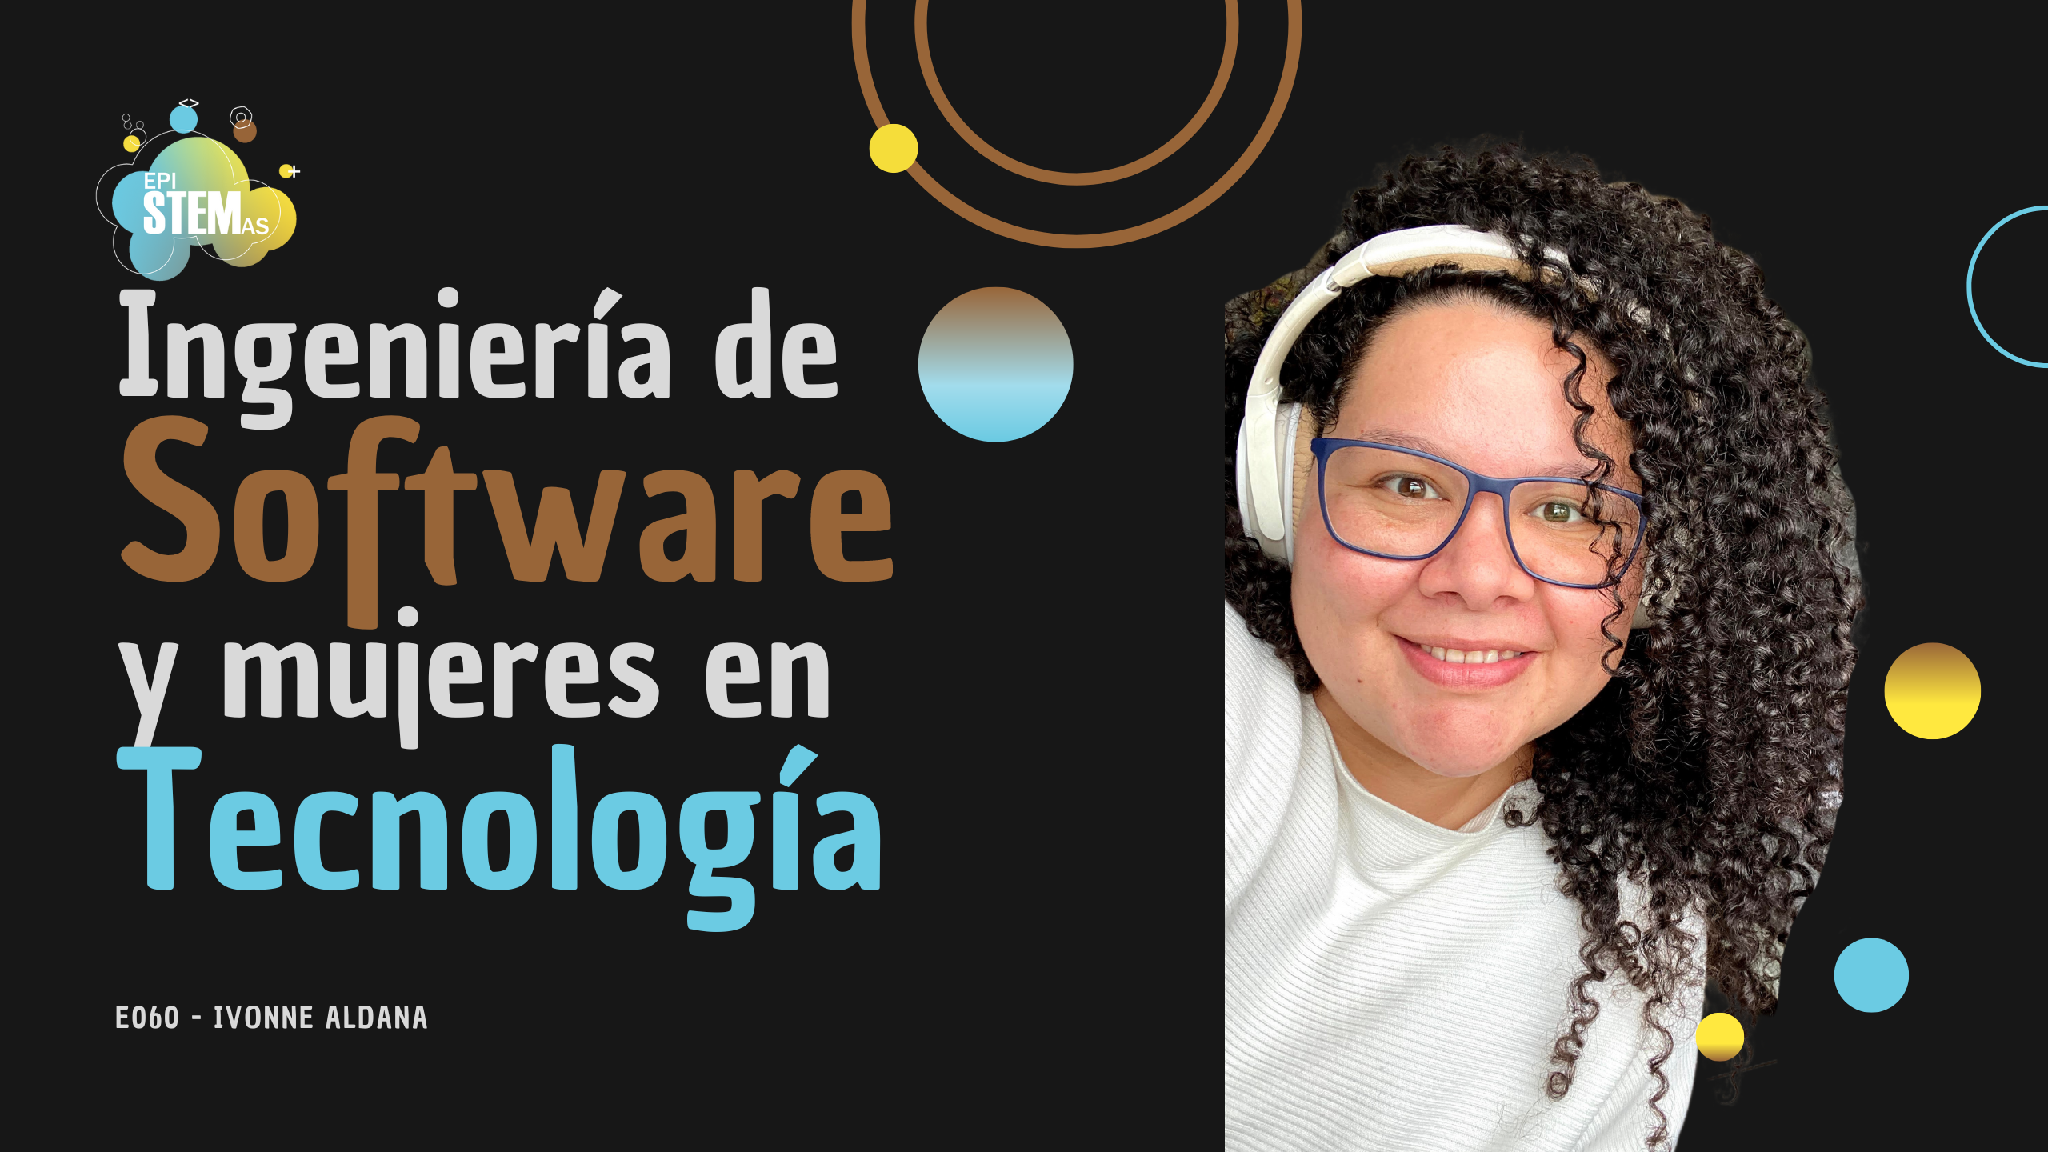 Ingeniería de Software y mujeres en tecnología